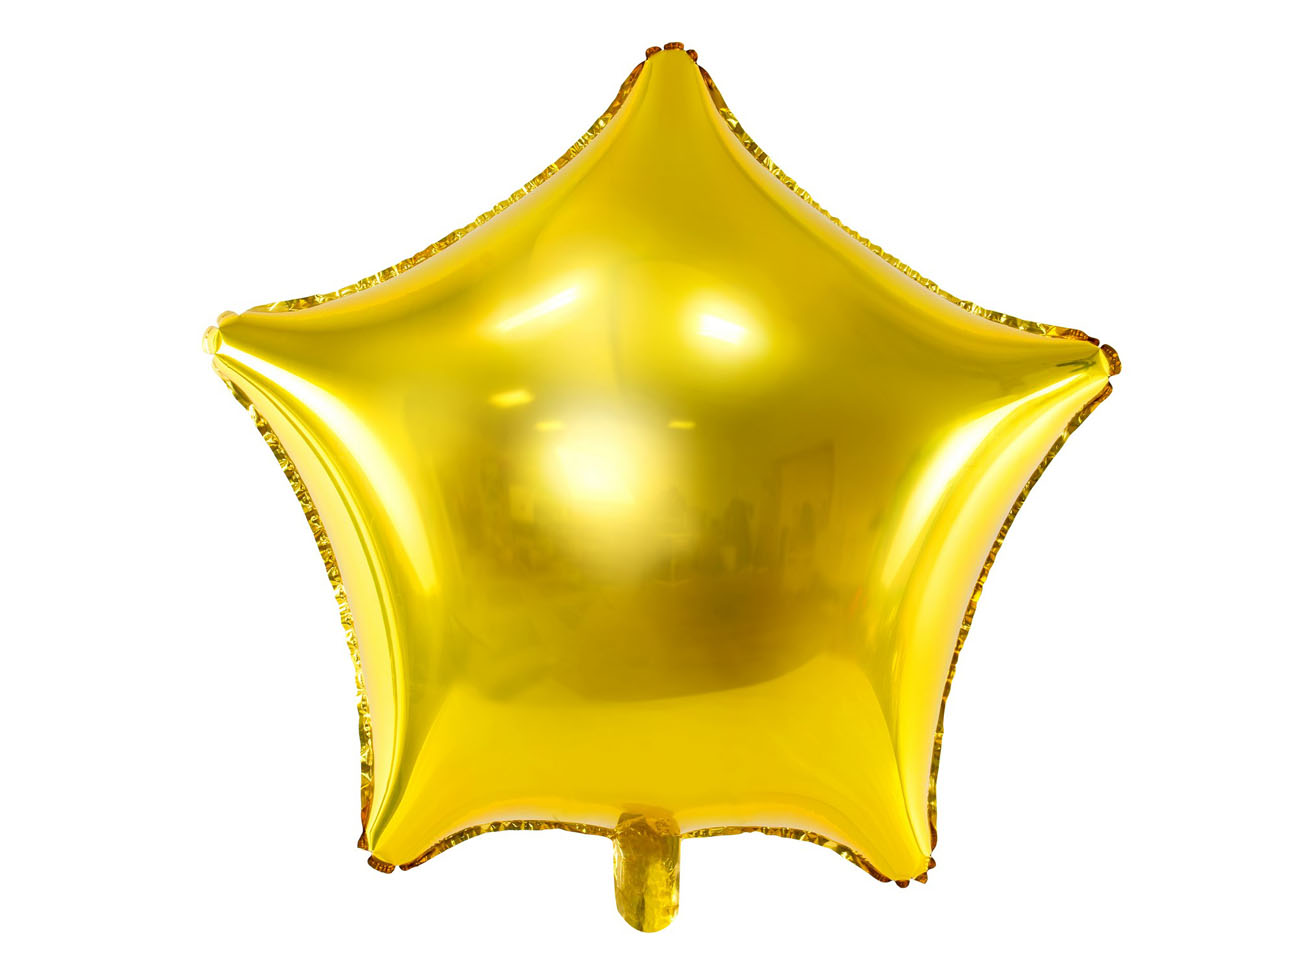 Párty balónik - folióvý - Star (1 ks) - BL02-0004